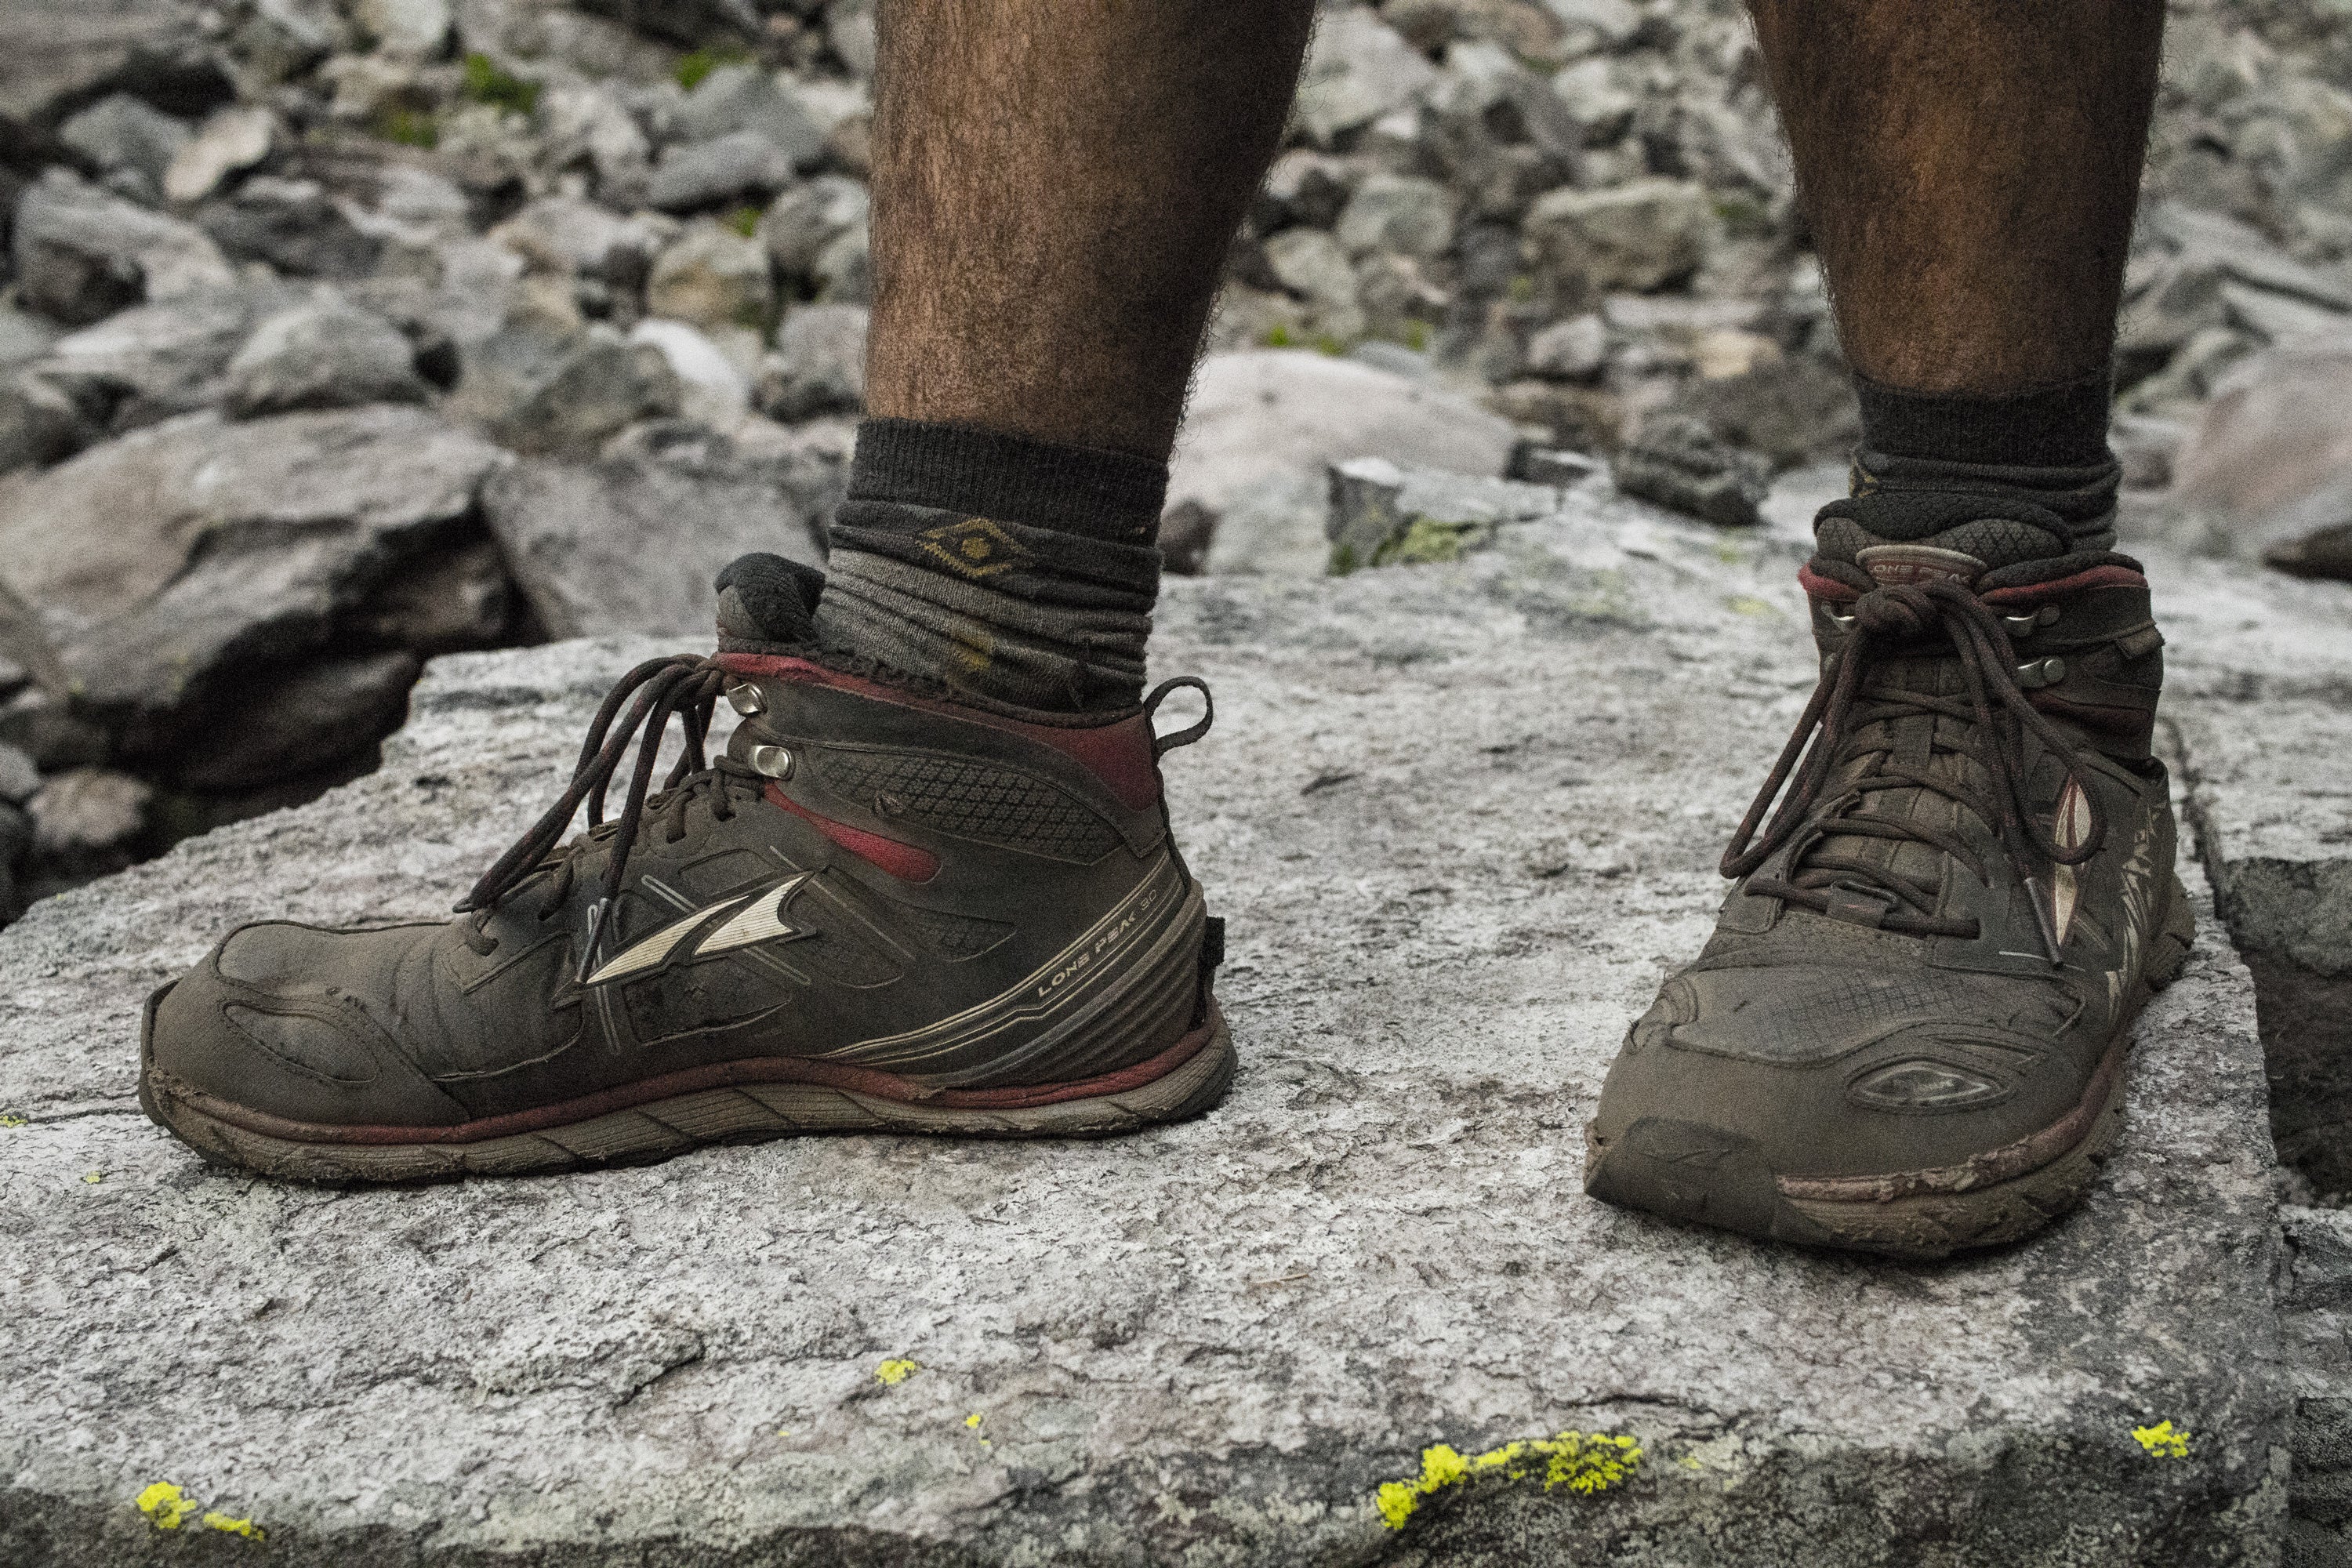 Hiking Footwear